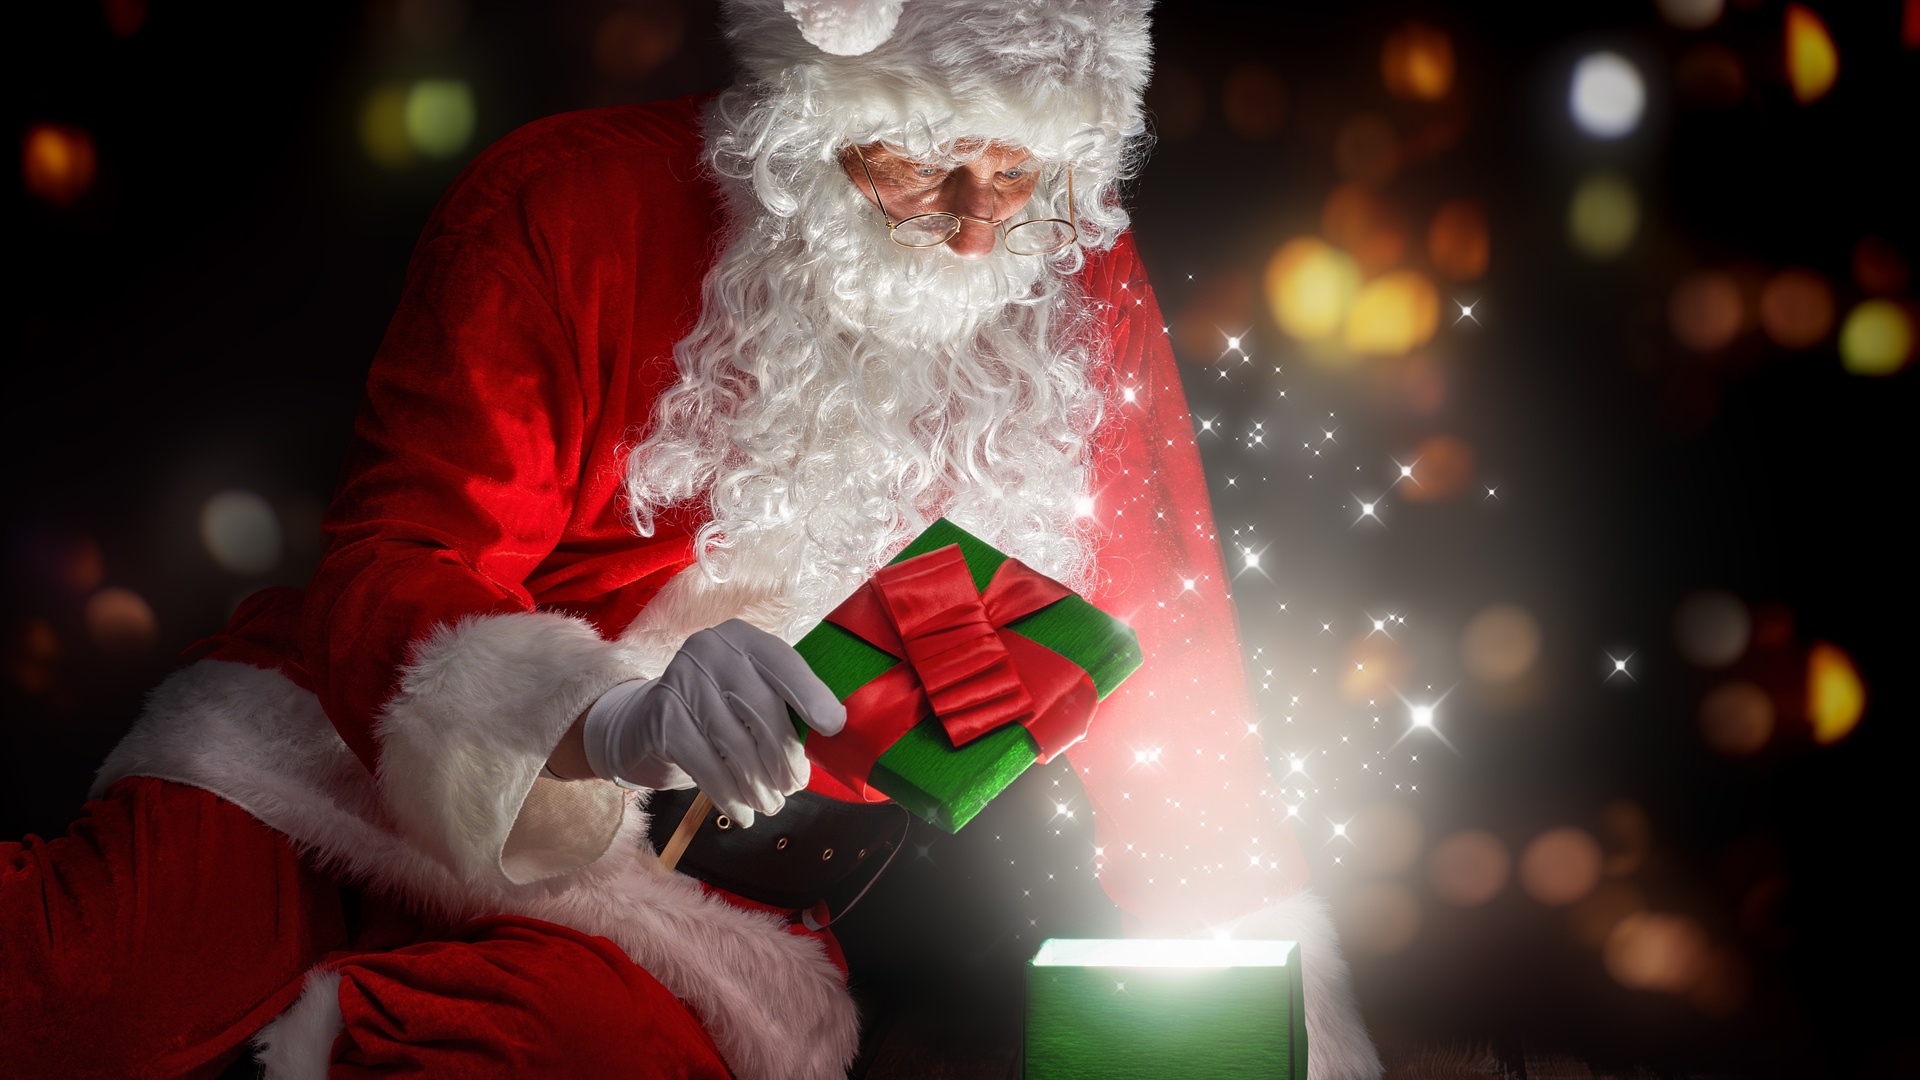 Santa Claus mở quà Noel và nụ cười của trẻ em là cảnh tượng đáng yêu trong ngày lễ tuyệt vời này. Hãy xem hình ảnh này để tận hưởng không khí Noel ấm áp và đầy sự hy vọng, cũng như tràn đầy tình yêu thương đối với mọi người.